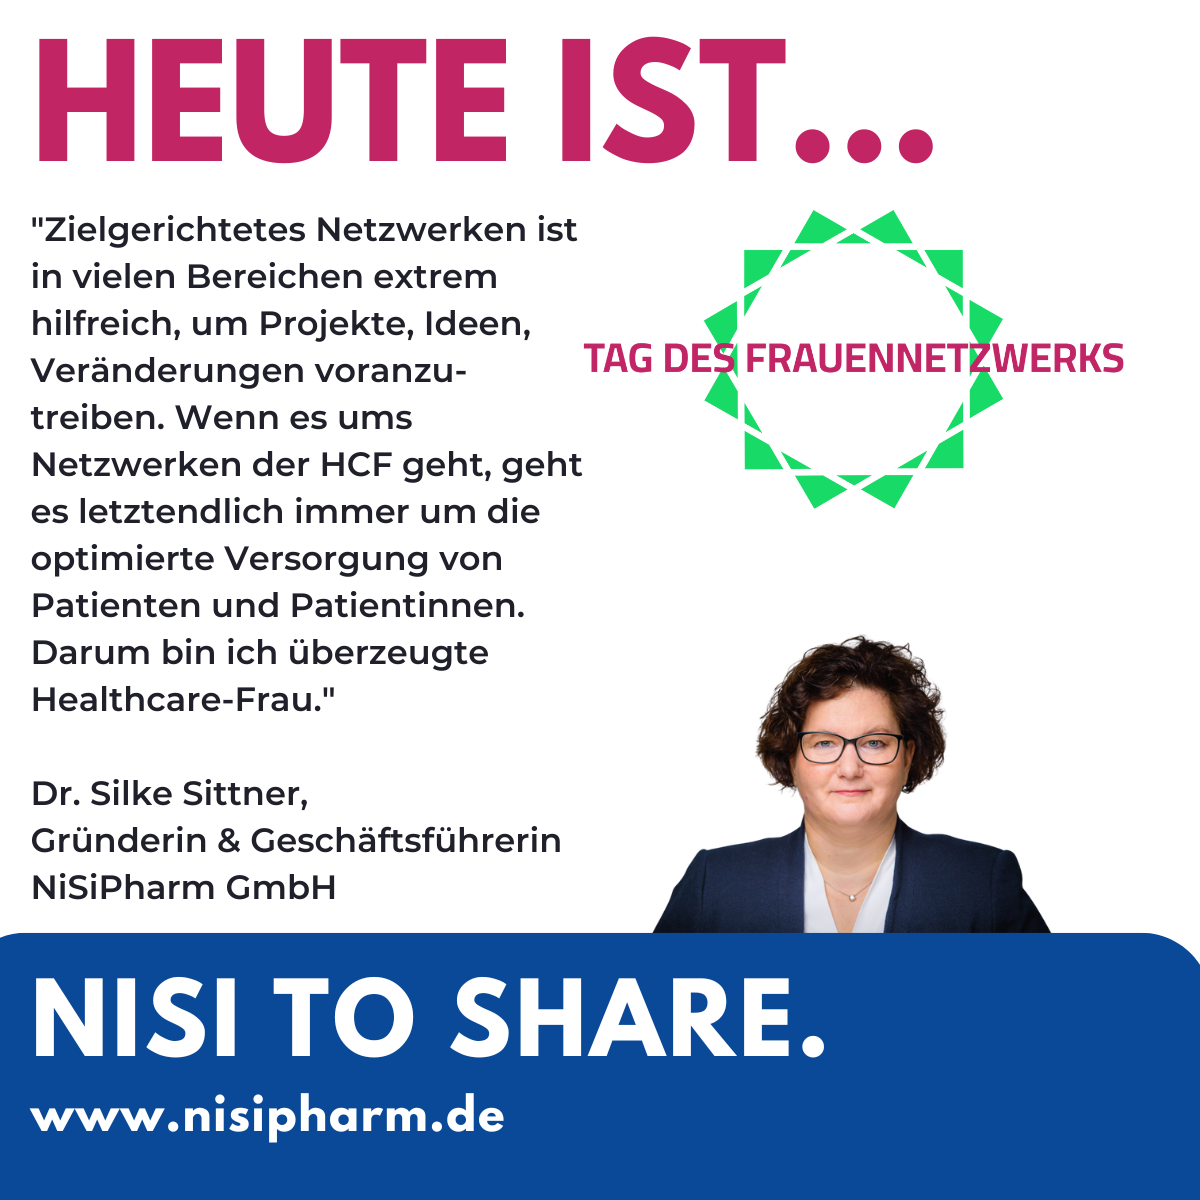 Ein Bild und Zitat mit Hinweis auf den Tag des Frauennetzwerks: „𝗭𝗶𝗲𝗹𝗴𝗲𝗿𝗶𝗰𝗵𝘁𝗲𝘁𝗲𝘀 𝗡𝗲𝘁𝘇𝘄𝗲𝗿𝗸𝗲𝗻 𝗶𝘀𝘁 𝗶𝗻 𝘃𝗶𝗲𝗹𝗲𝗻 𝗕𝗲𝗿𝗲𝗶𝗰𝗵𝗲𝗻 𝗲𝘅𝘁𝗿𝗲𝗺 𝗵𝗶𝗹𝗳𝗿𝗲𝗶𝗰𝗵, 𝘂𝗺 𝗣𝗿𝗼𝗷𝗲𝗸𝘁𝗲, 𝗜𝗱𝗲𝗲𝗻, 𝗩𝗲𝗿ä𝗻𝗱𝗲𝗿𝘂𝗻𝗴𝗲𝗻 𝘃𝗼𝗿𝗮𝗻𝘇𝘂𝘁𝗿𝗲𝗶𝗯𝗲𝗻. 𝗪𝗲𝗻𝗻 𝗲𝘀 𝘂𝗺𝘀 𝗡𝗲𝘁𝘇𝘄𝗲𝗿𝗸𝗲𝗻 𝗱𝗲𝗿 𝗛𝗖𝗙 𝗴𝗲𝗵𝘁, 𝗴𝗲𝗵𝘁 𝗲𝘀 𝗹𝗲𝘁𝘇𝘁𝗲𝗻𝗱𝗹𝗶𝗰𝗵 𝗶𝗺𝗺𝗲𝗿 𝘂𝗺 𝗱𝗶𝗲 𝗼𝗽𝘁𝗶𝗺𝗶𝗲𝗿𝘁𝗲 𝗩𝗲𝗿𝘀𝗼𝗿𝗴𝘂𝗻𝗴 𝘃𝗼𝗻 𝗣𝗮𝘁𝗶𝗲𝗻𝘁:𝗶𝗻𝗻𝗲𝗻. 𝗗𝗮𝗿𝘂𝗺 𝗯𝗶𝗻 𝗶𝗰𝗵 ü𝗯𝗲𝗿𝘇𝗲𝘂𝗴𝘁𝗲 𝗛𝗲𝗮𝗹𝘁𝗵𝗰𝗮𝗿𝗲-𝗙𝗿𝗮𝘂", sagt Silke Sittner, Gründerin und Geschäftsführerin der NiSiPharm GmbH.